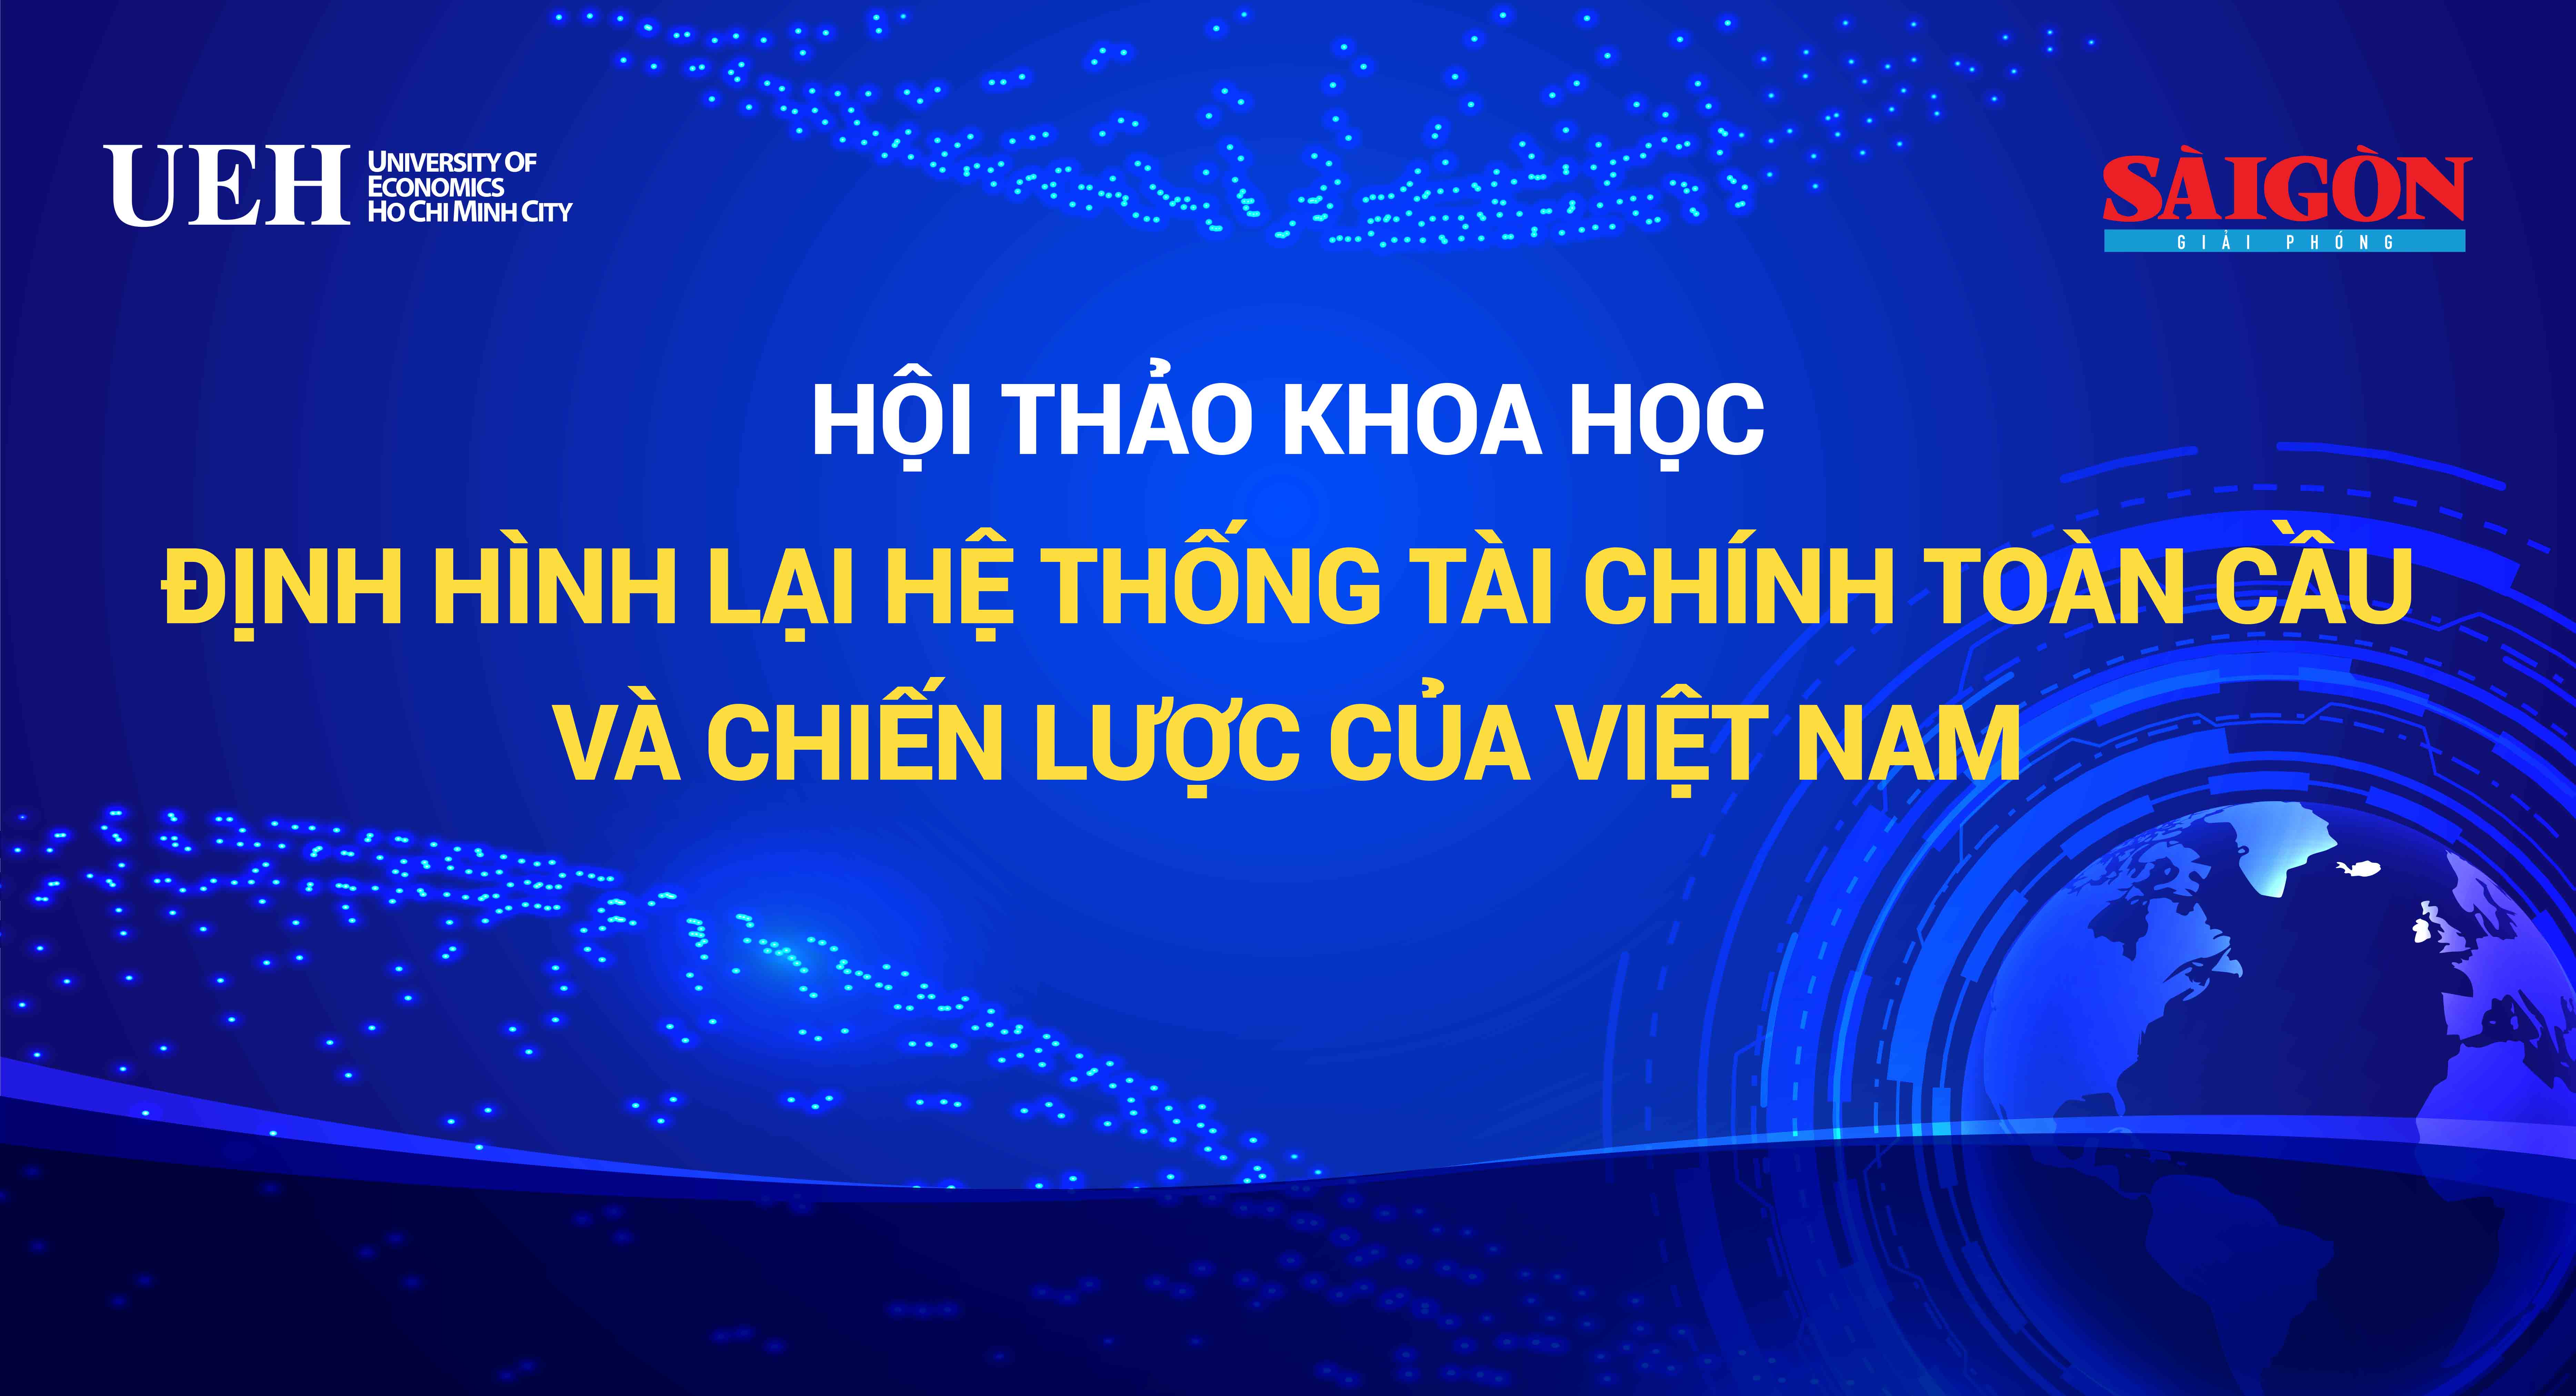 Loạt bài hội thảo “Định hình lại hệ thống tài chính toàn cầu và chiến lược của Việt Nam” trên báo Sài Gòn Đầu Tư Tài Chính